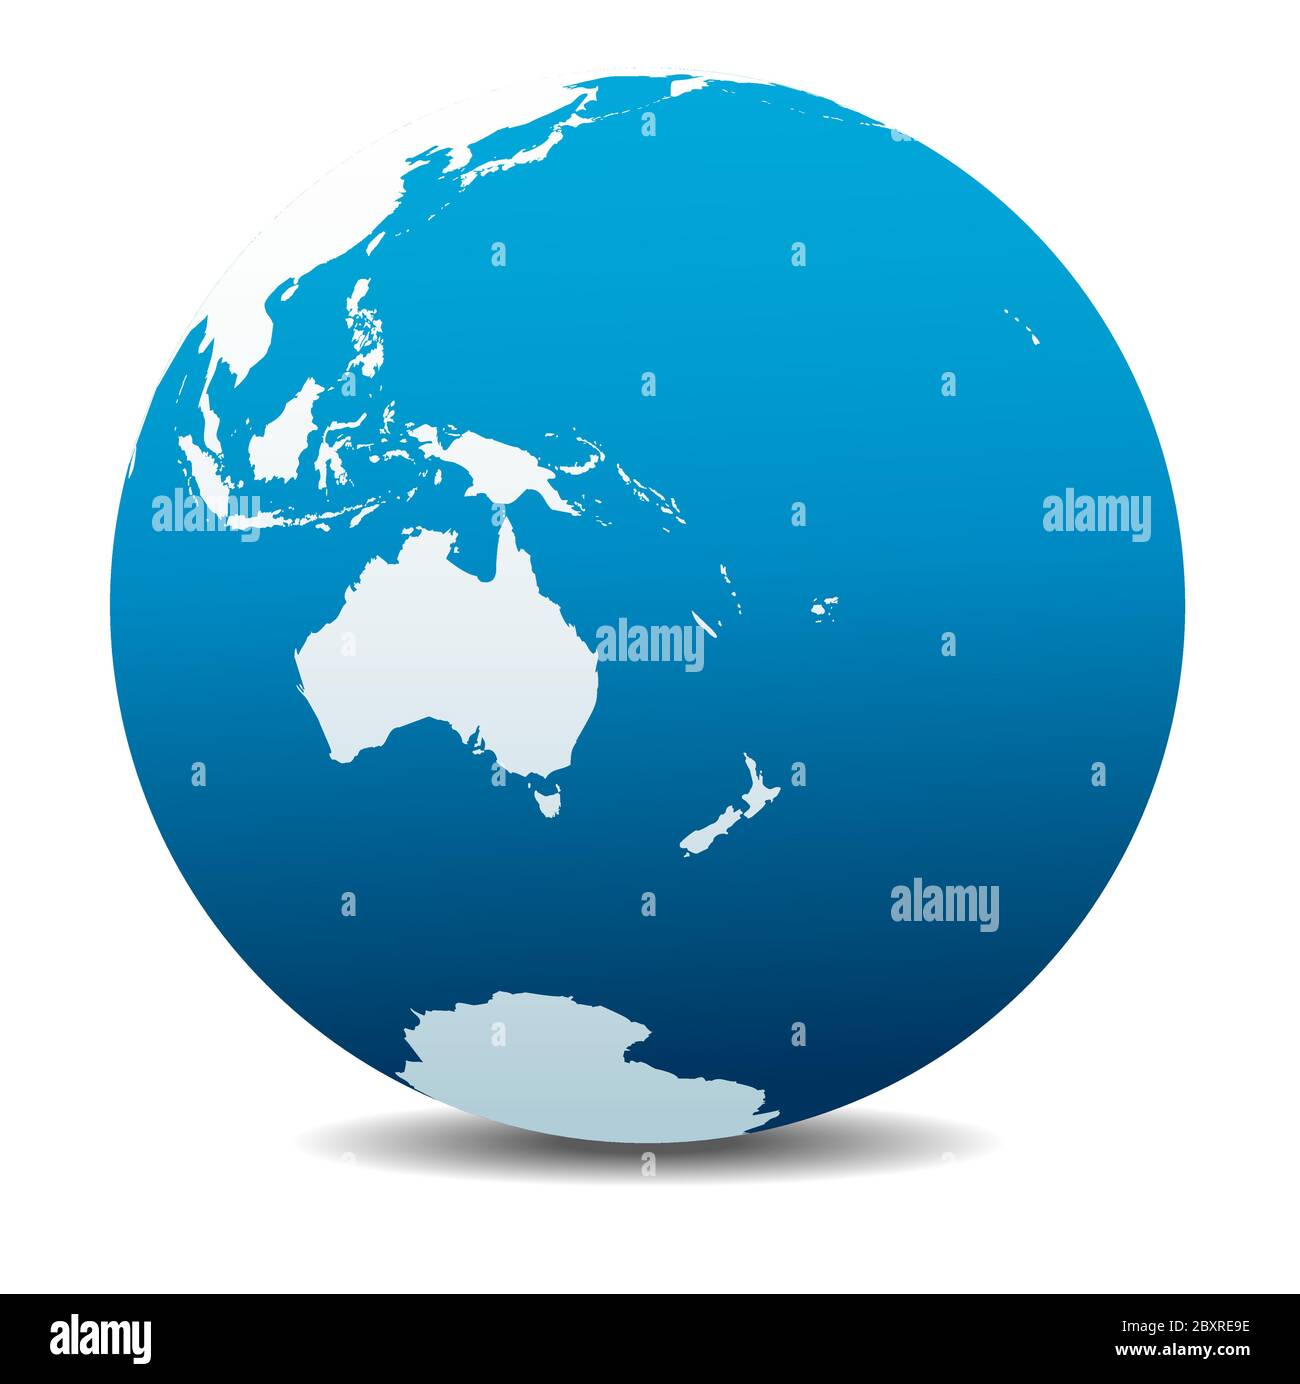 Australie et Nouvelle-Zélande. Icône carte vectorielle du globe terrestre, Terre. Tous les éléments se trouvent sur des calques individuels dans le fichier vectoriel. Illustration de Vecteur